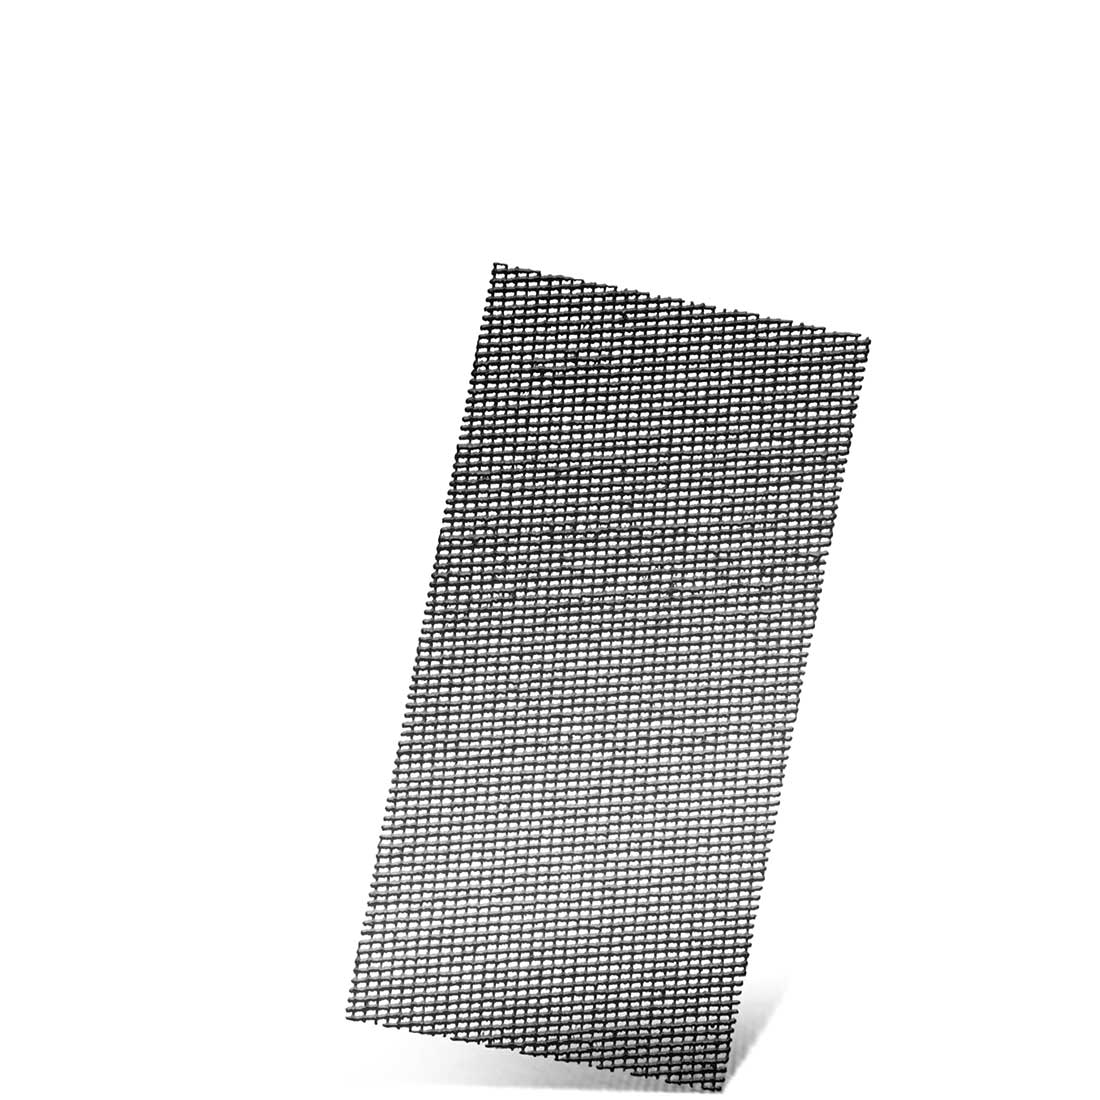 MENZER Klett-Schleifgitter für Schwingschleifer, K60–180, 230 x 115 mm / Gitter / Siliciumcarbid